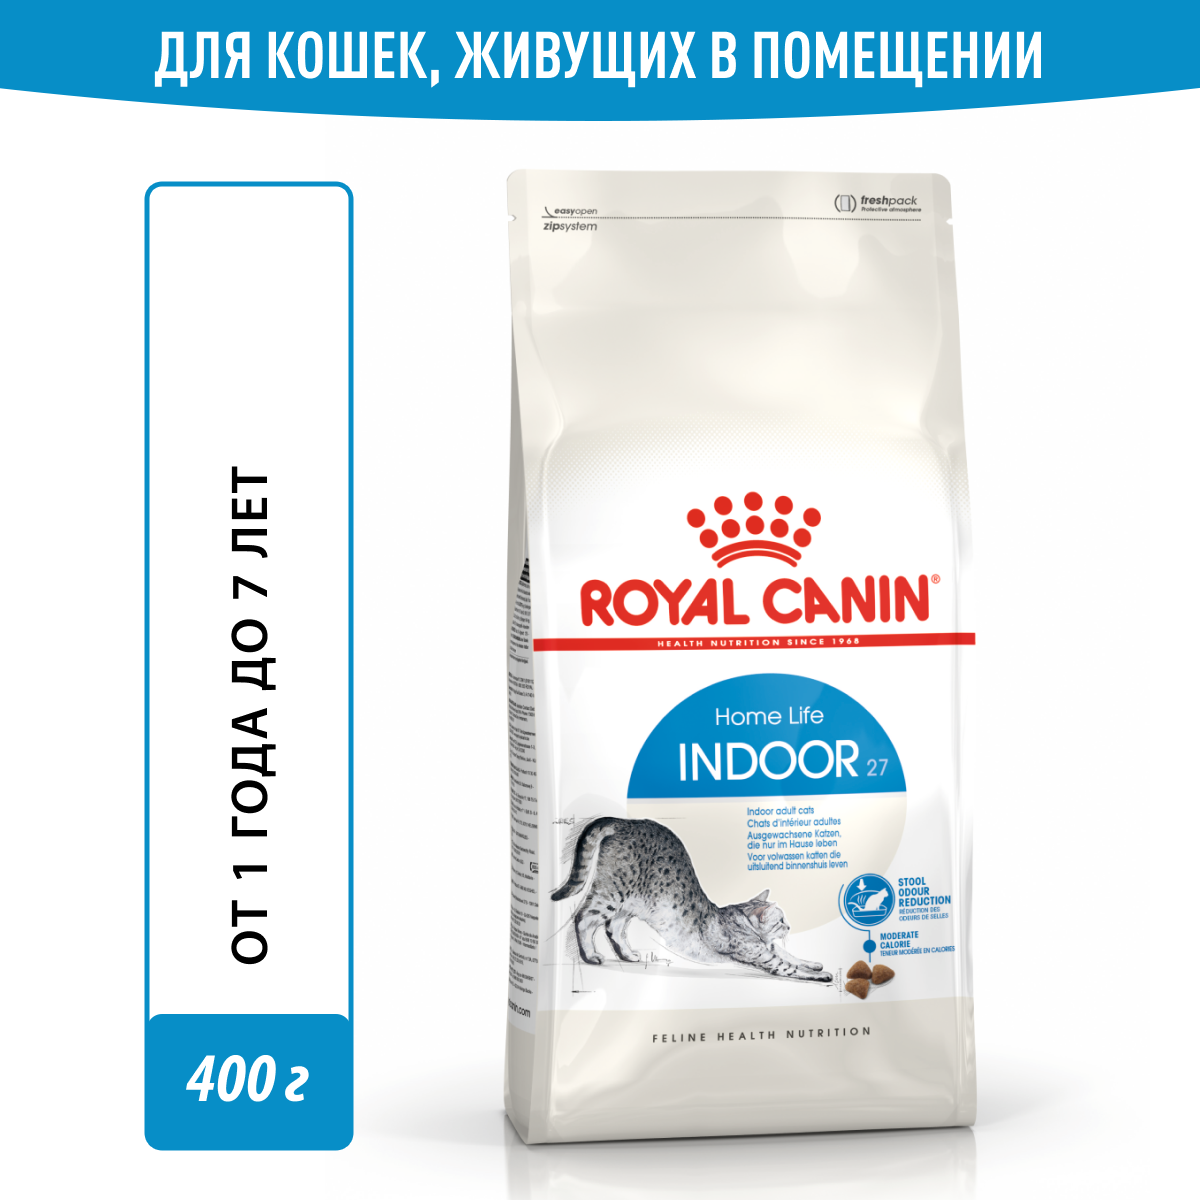 Сухой корм Royal Canin Indoor 27 для кошек, живущих в помещении от 1 года до 7 лет, 0,4 кг